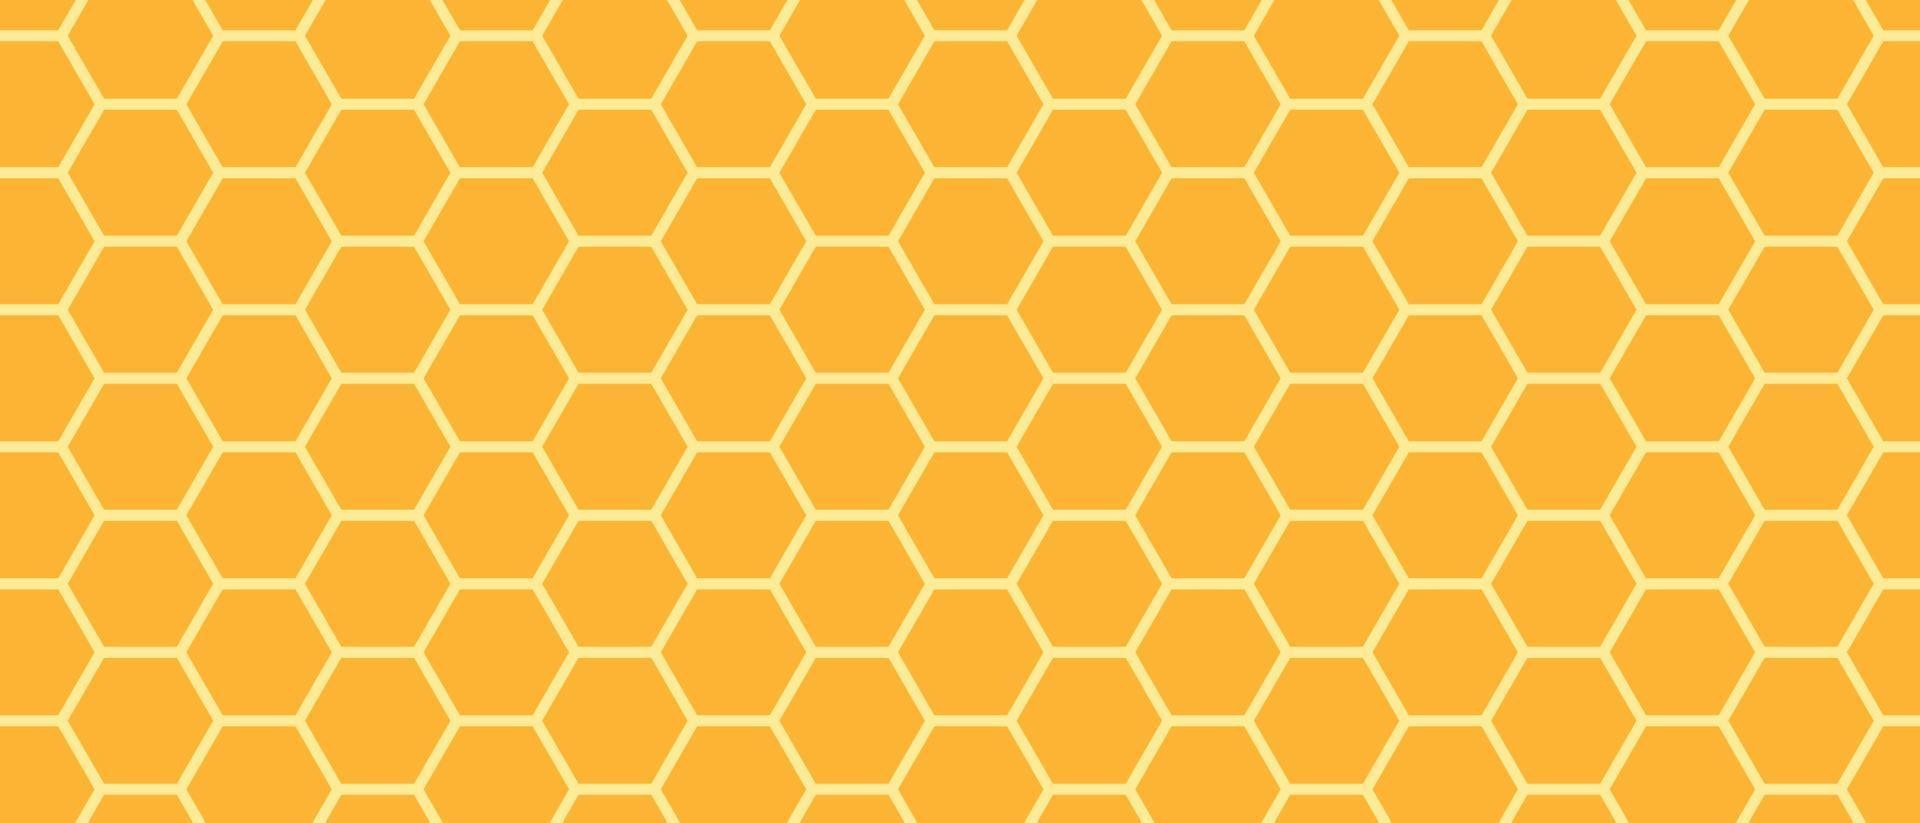 texture de grille de peigne au miel doré et nids d'abeilles hexagonaux de ruche géométrique. texture transparente des cellules hexagonales de miel d'or. fond clair de nids d'abeilles. illustration vectorielle vecteur